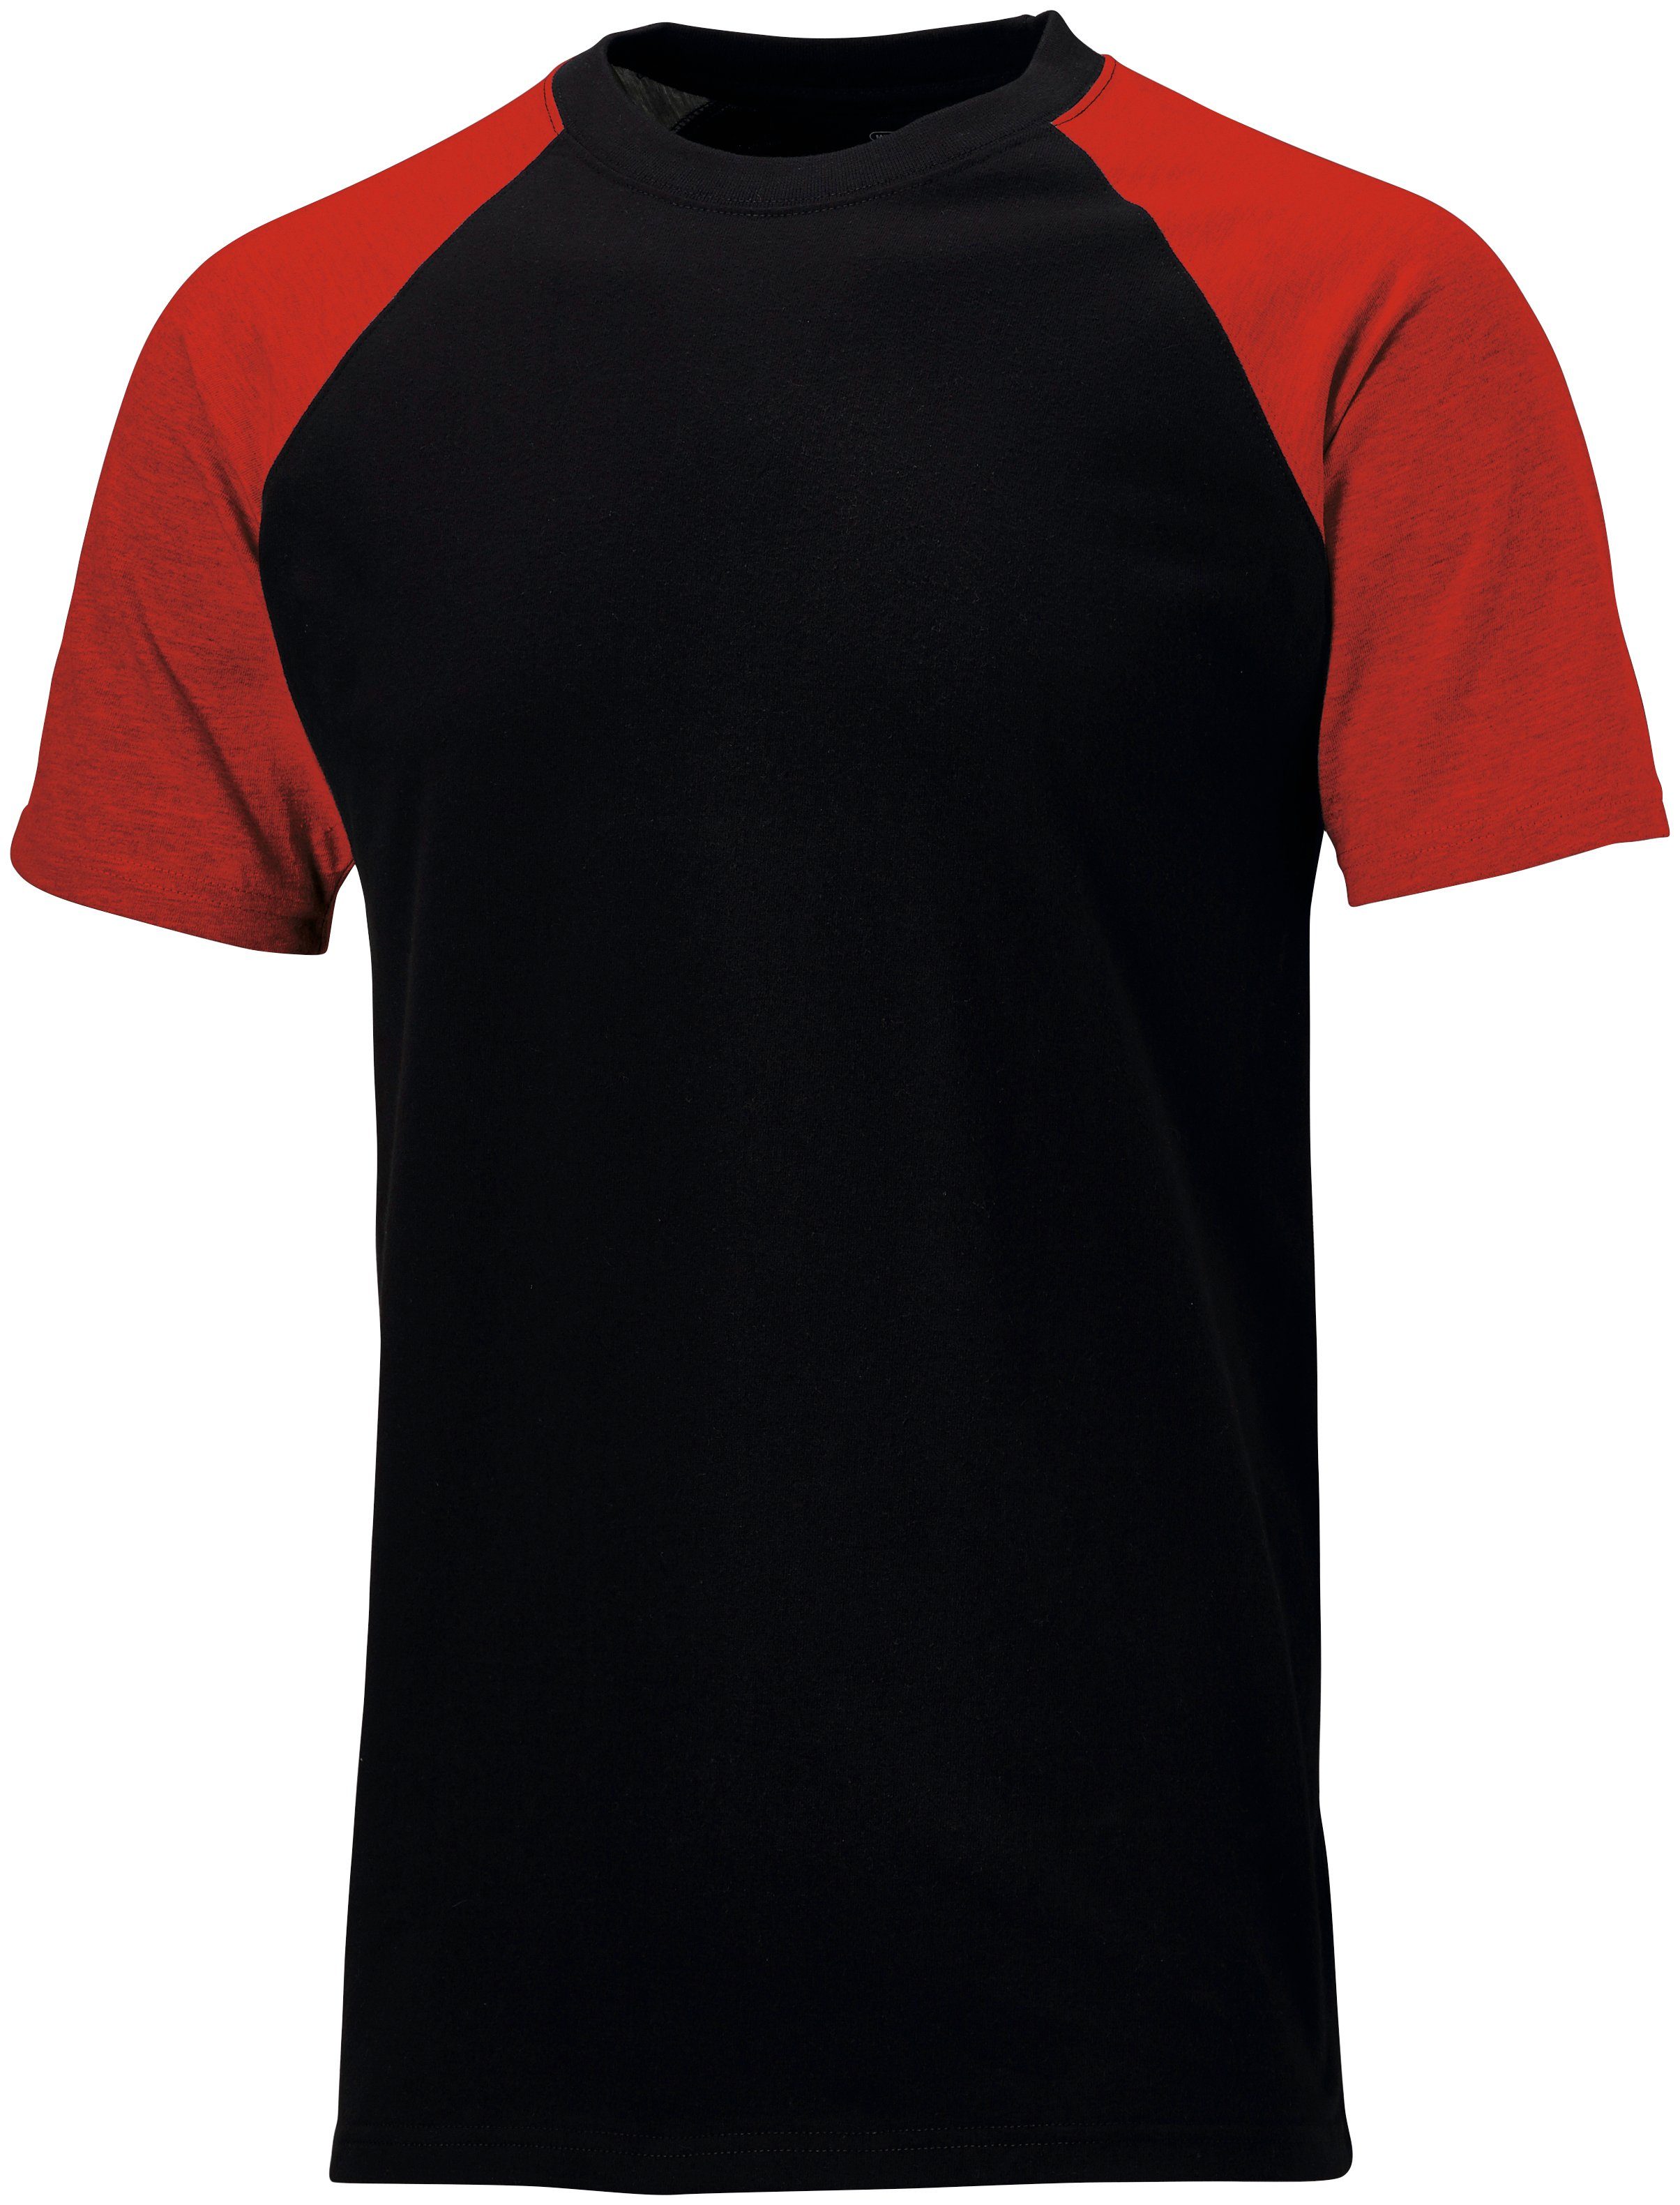 Dickies T-Shirt Gr. S schwarz-rot 3XL 